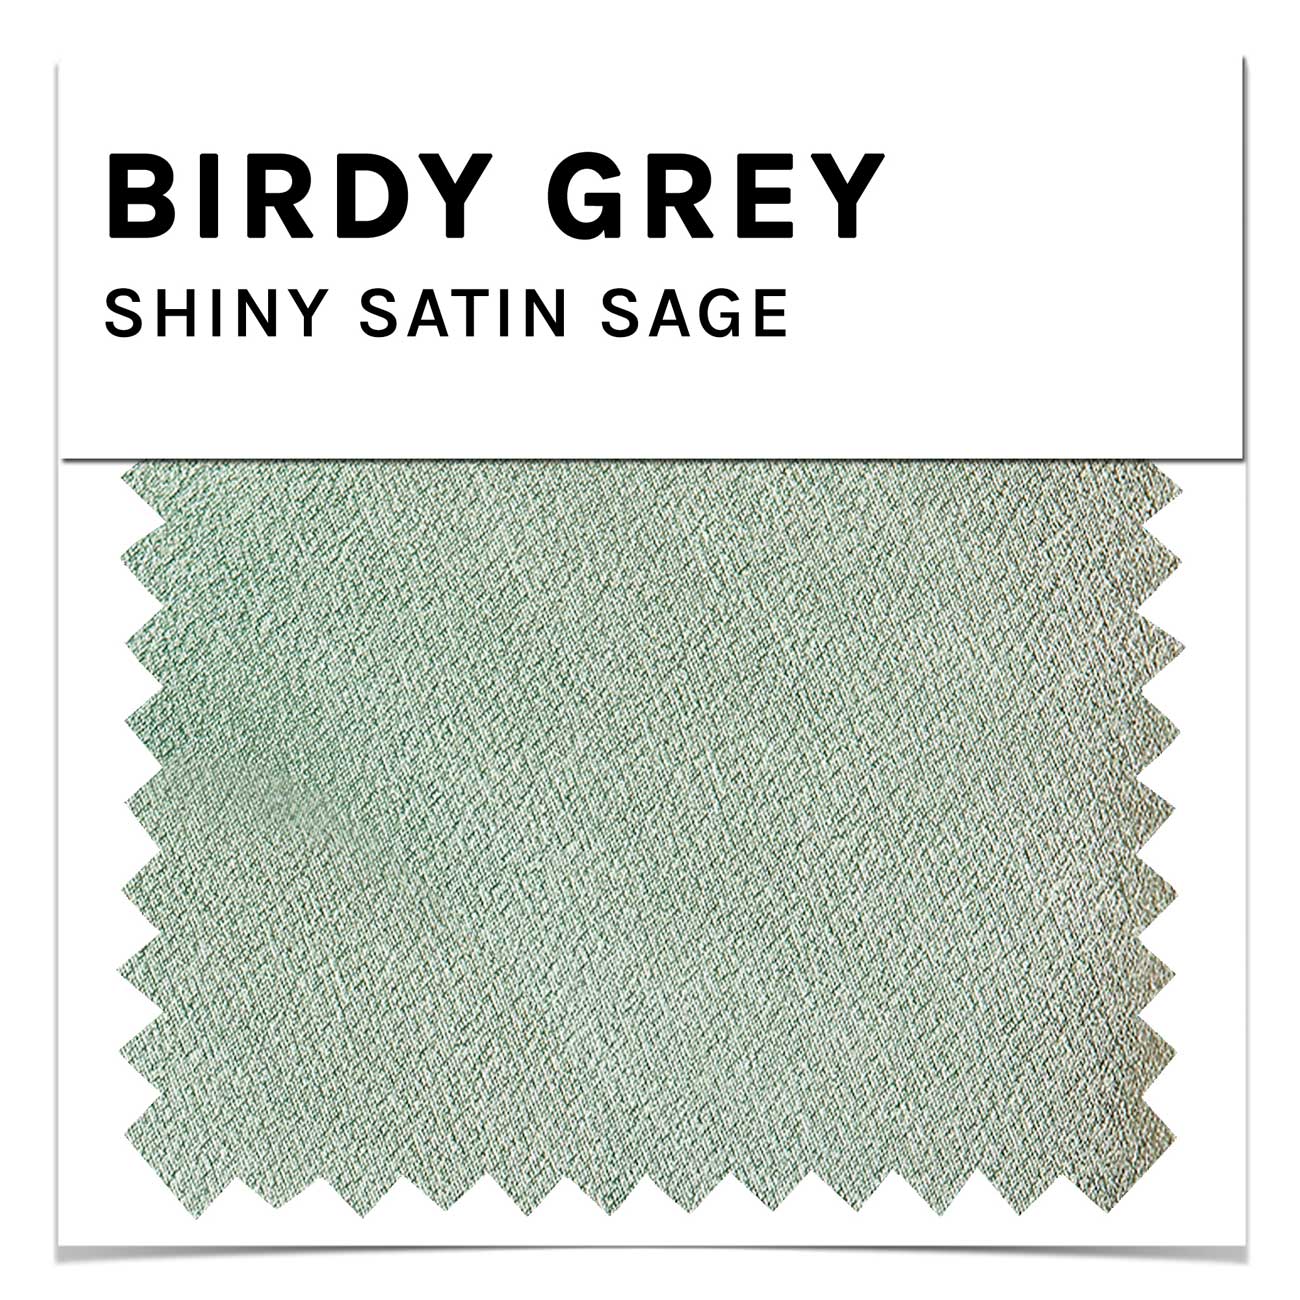 Swatch - Shiny Satin in Sage by Birdy Grey